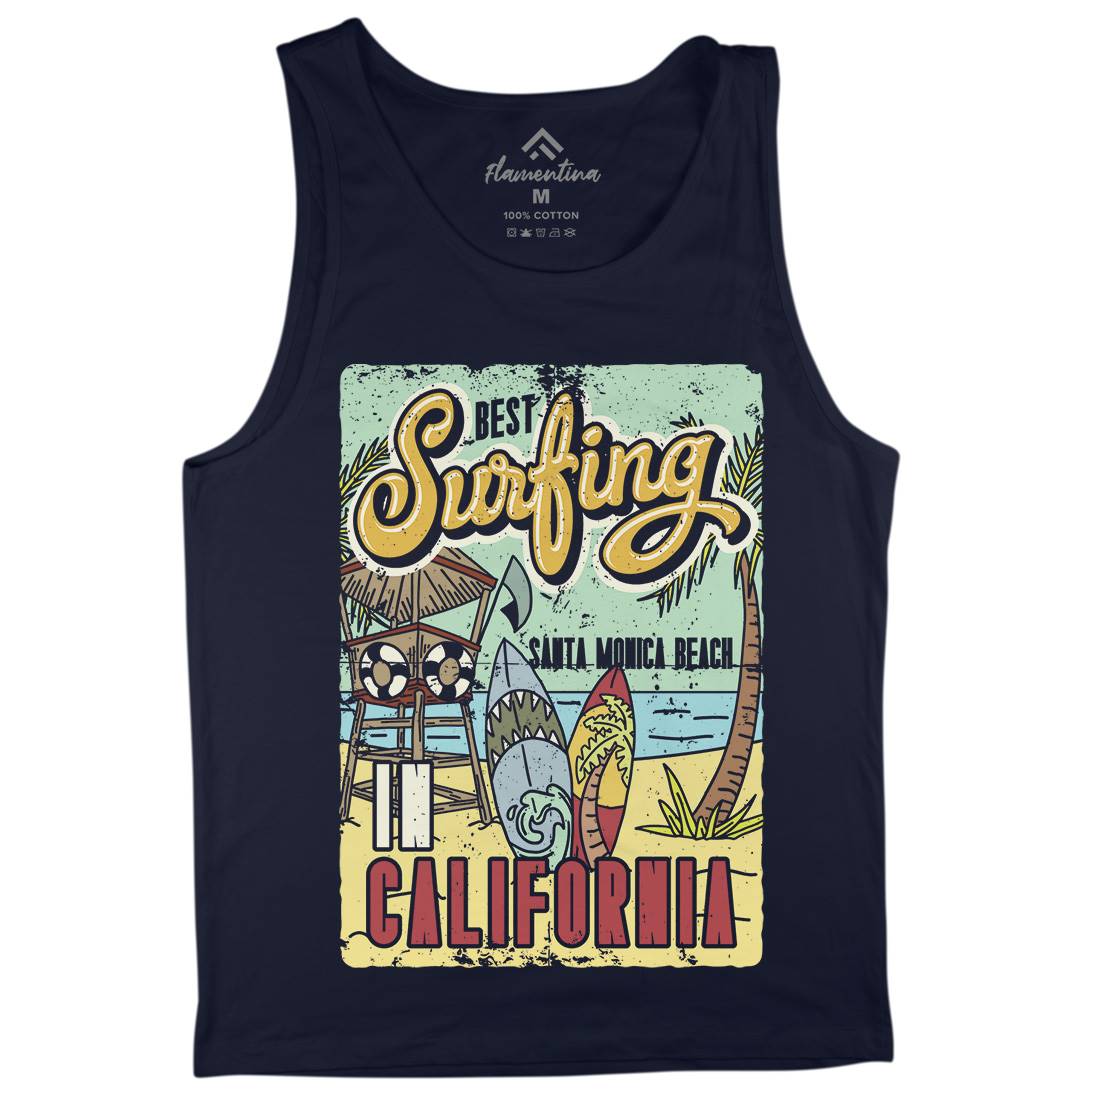 Santa Monica Surfing Mens Tank Top Vest Surf B355